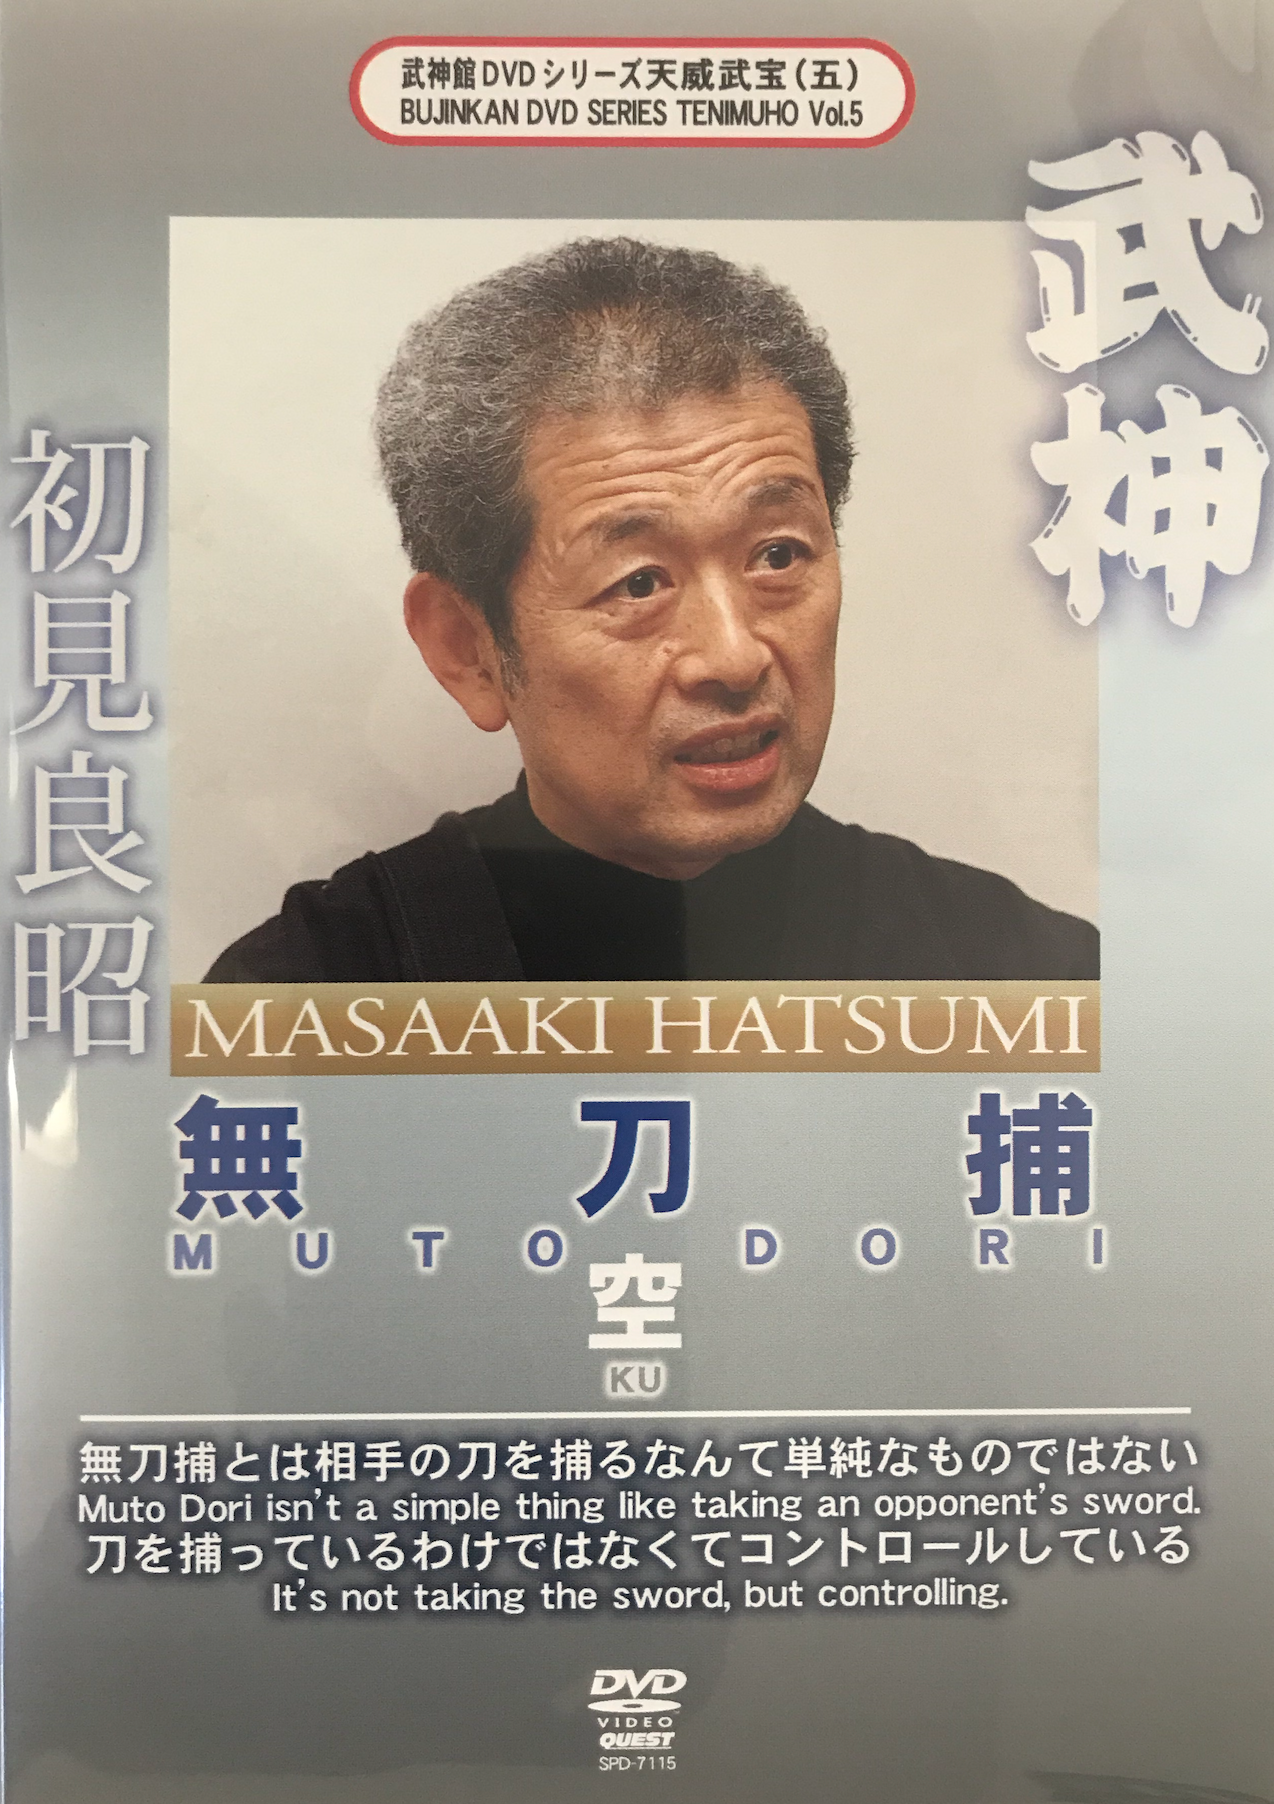 Bujinkan Mutodori Ku DVD with Masaaki Hatsumi - Budovideos